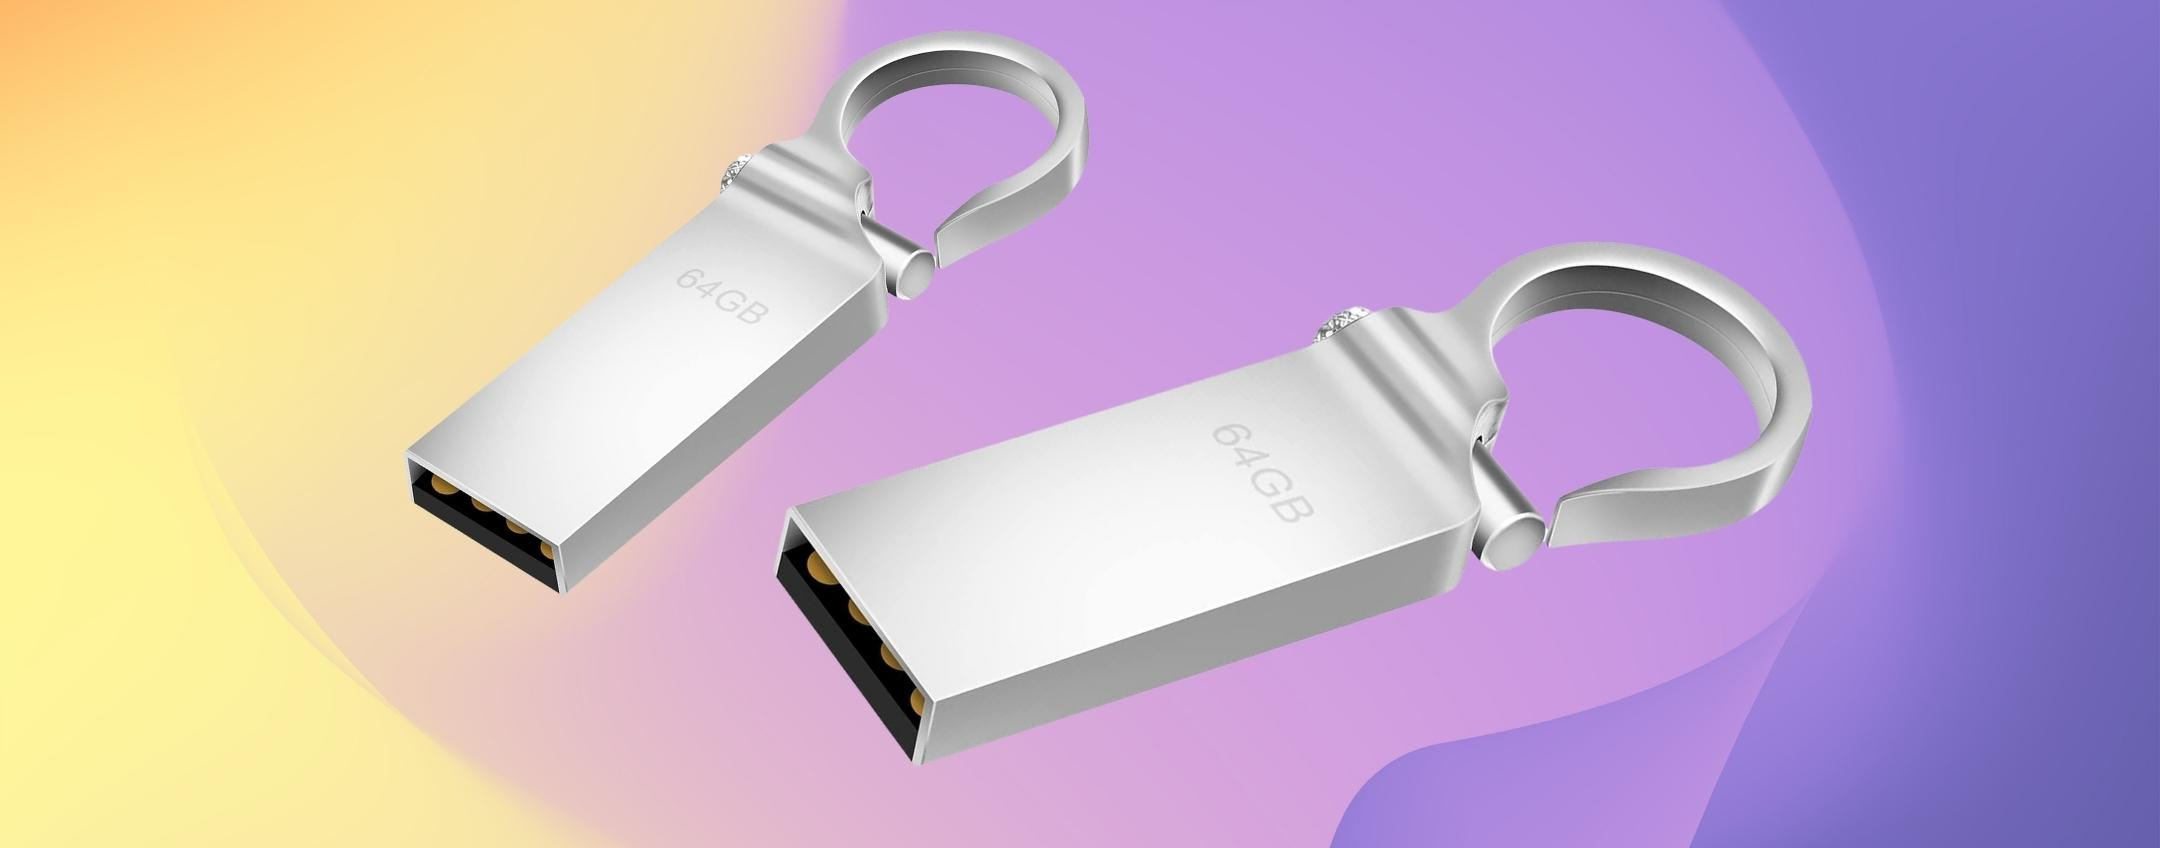 BOOM: ti porti a spasso 64GB con questa chiavetta USB MOSCHETTONE (5€)